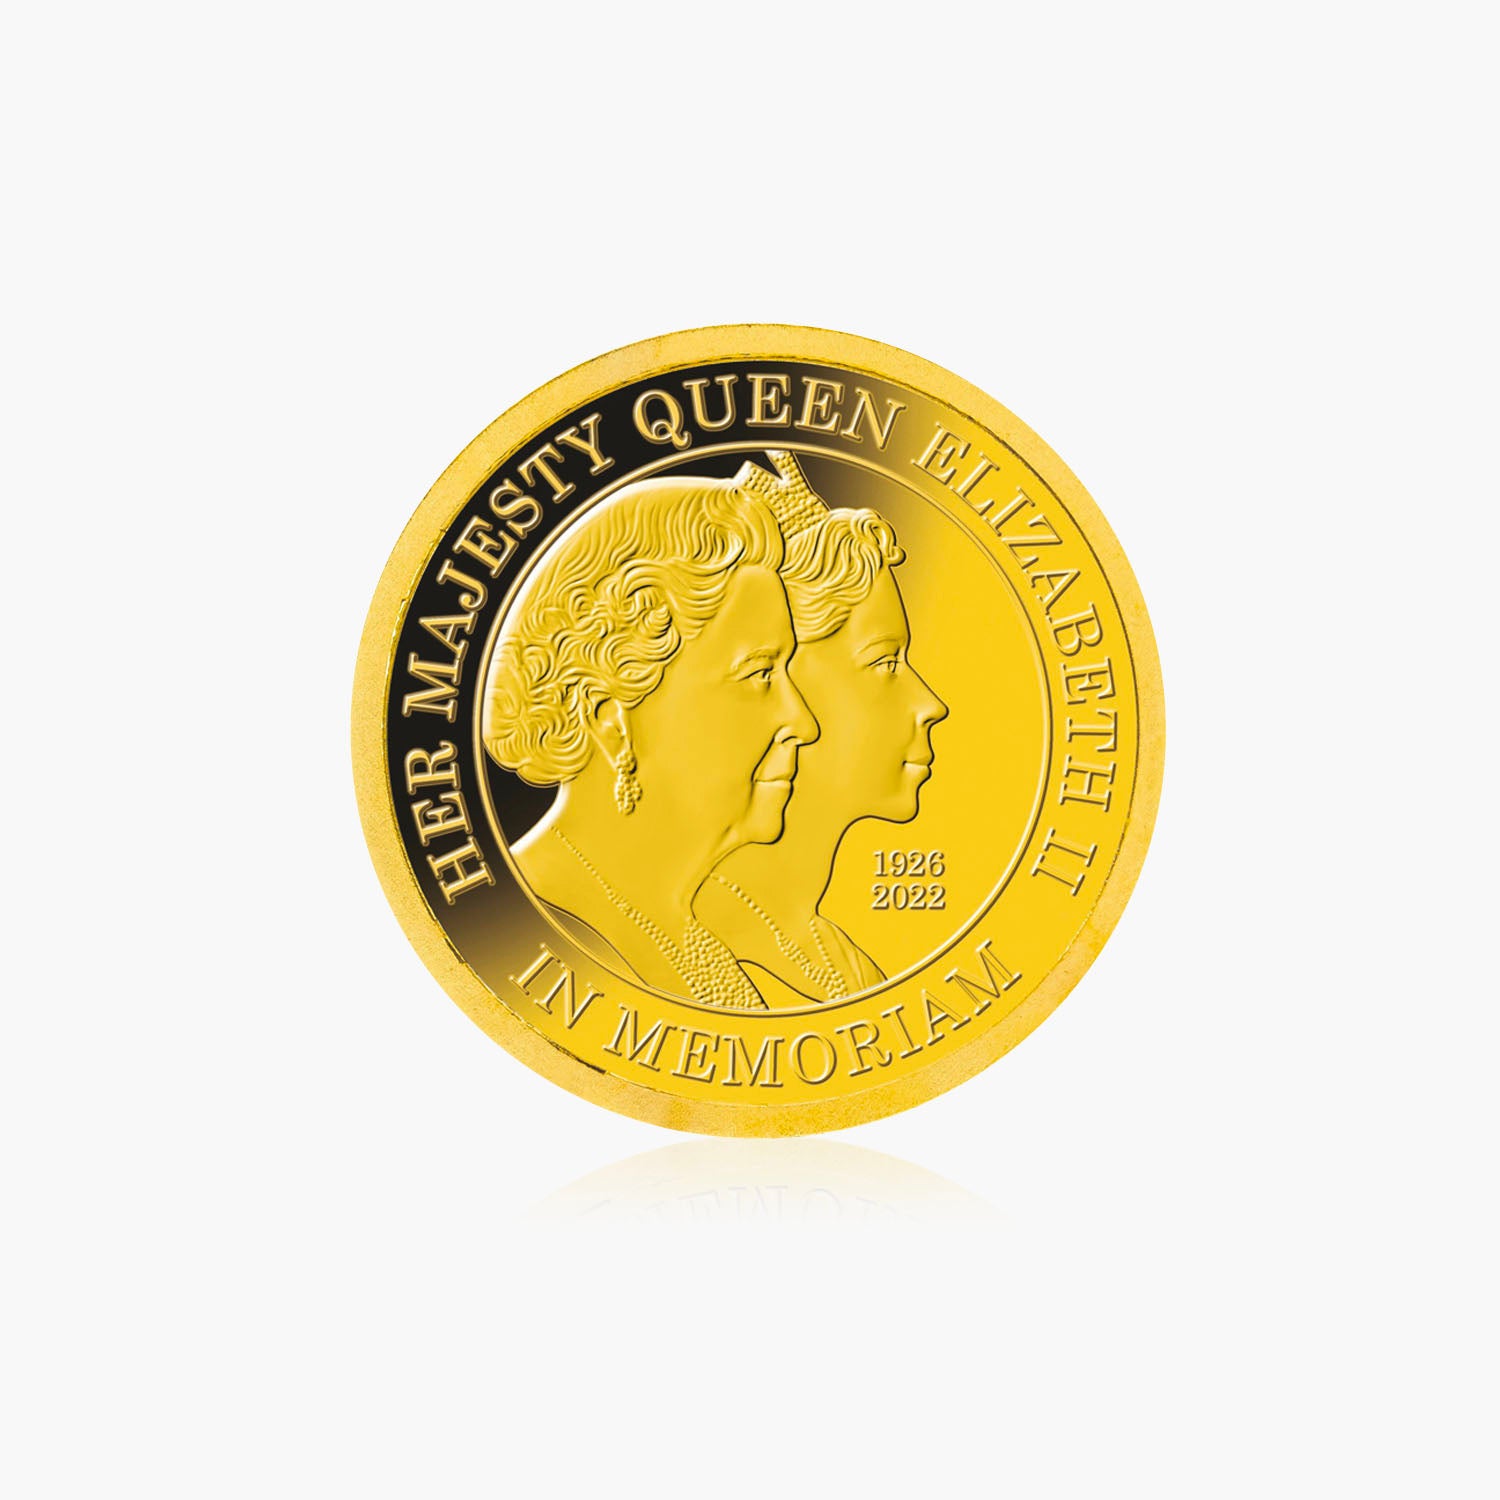 Queen Elizabeth II Double Portrait Solid Gold Coin